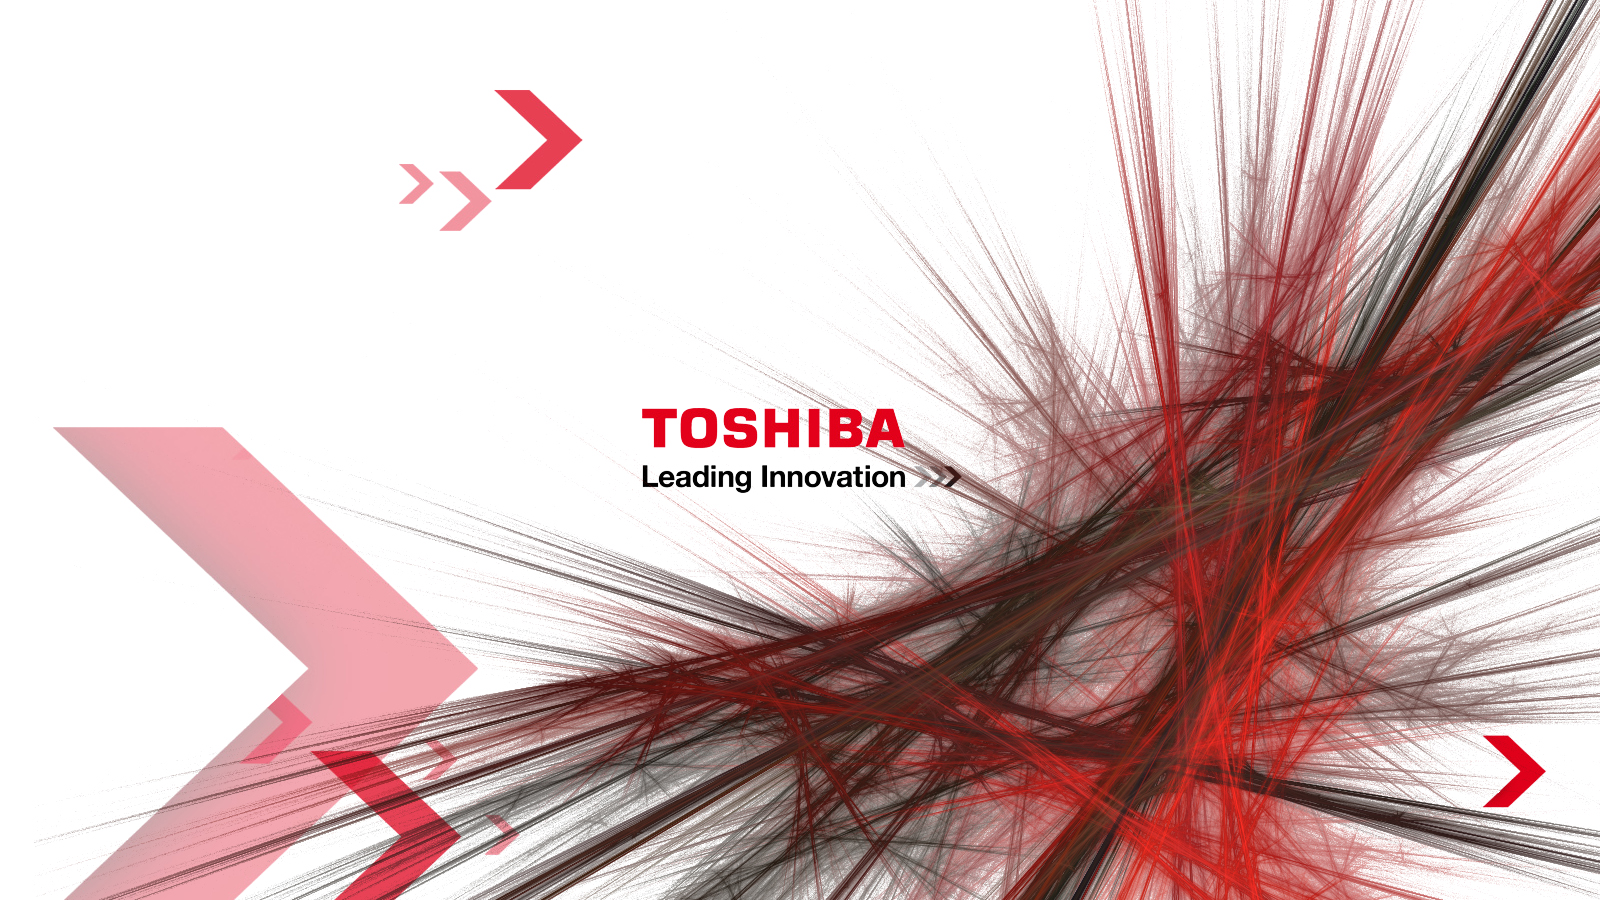 Save up to 400 at Toshiba.com - Toshiba coupons